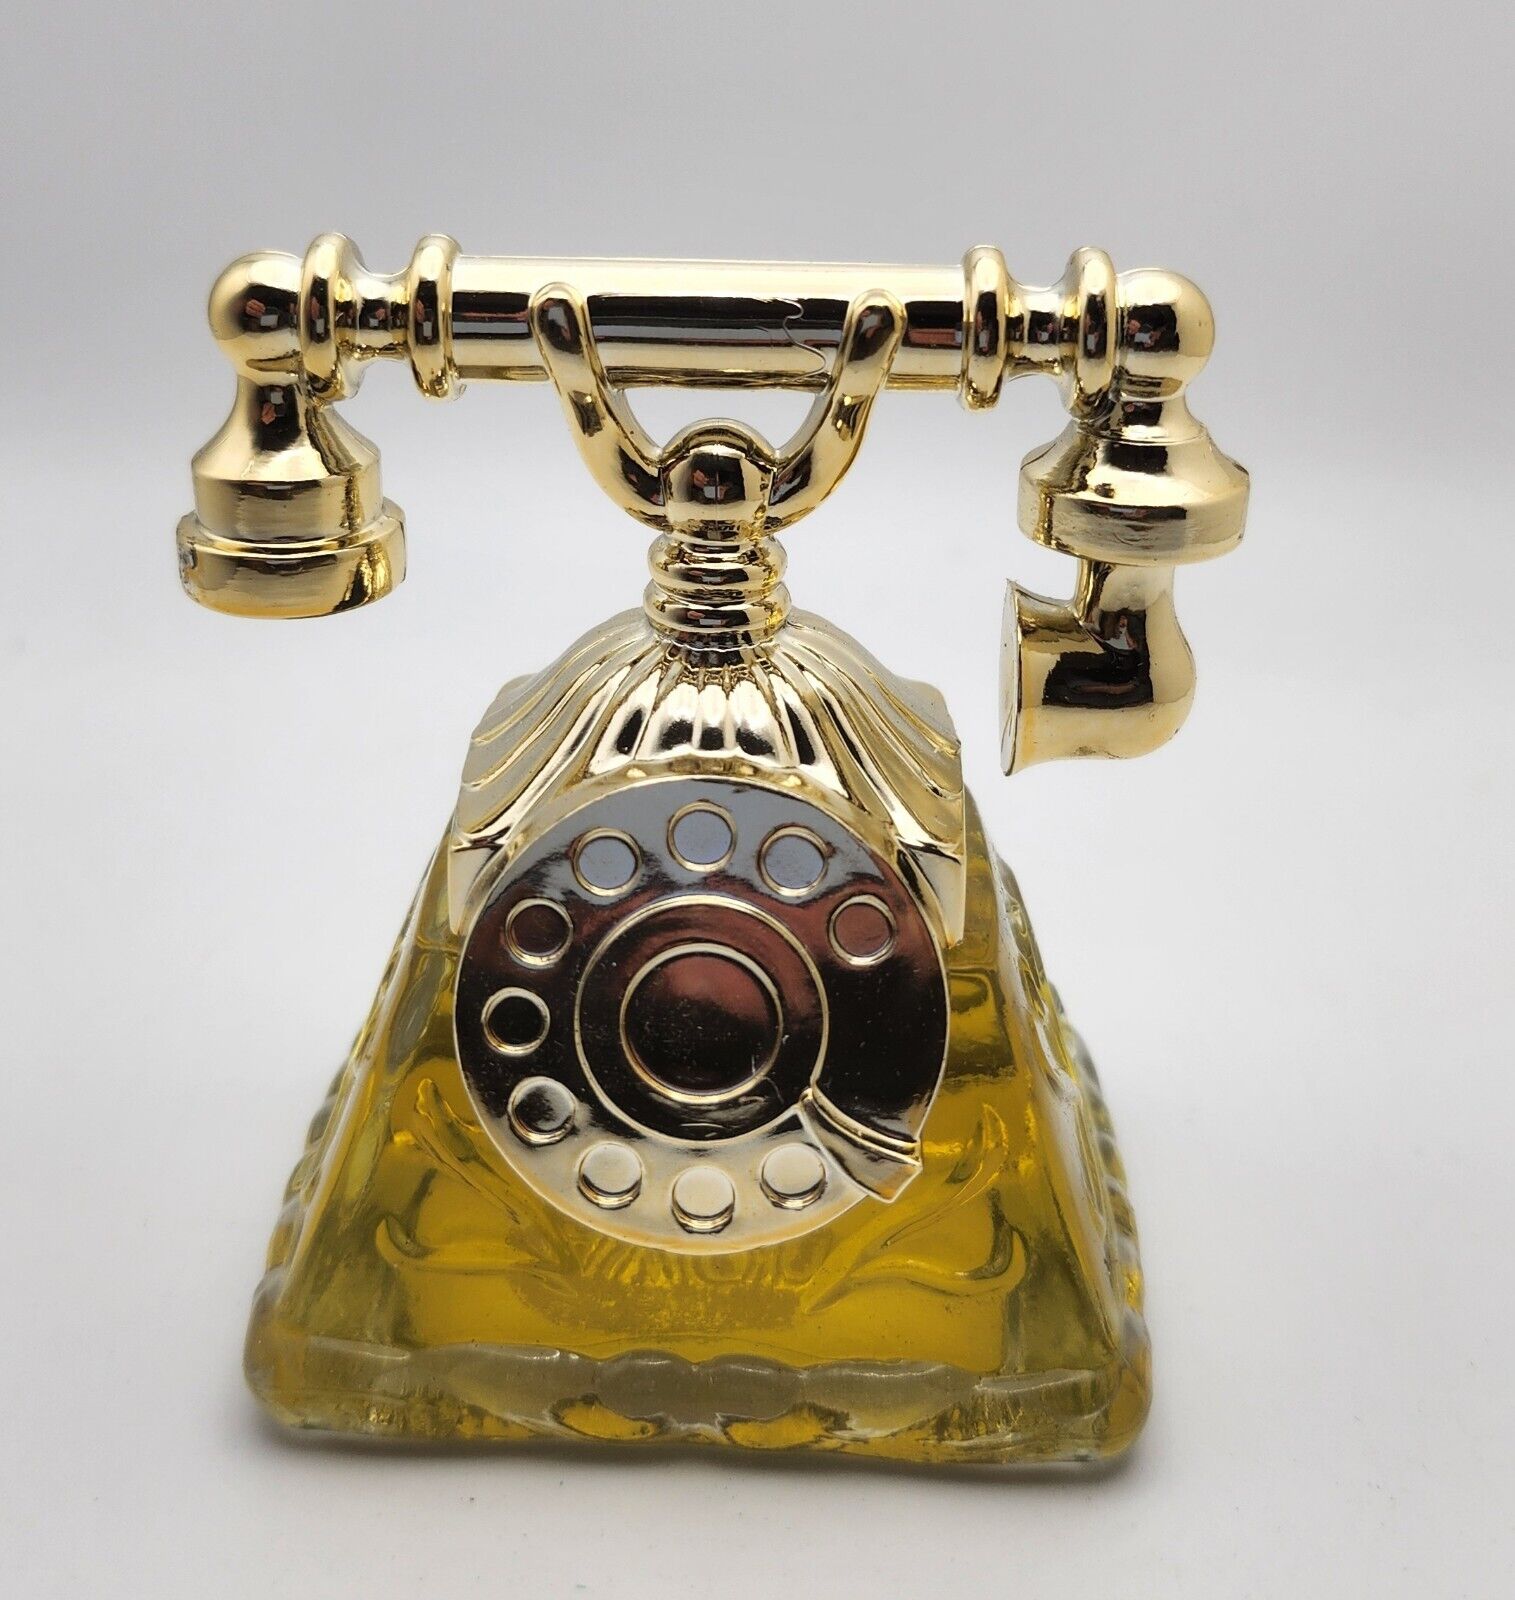 Vintag 1974 Avon La Belle Telephone Charisma Perfume Concentre 1 oz.  New In Box